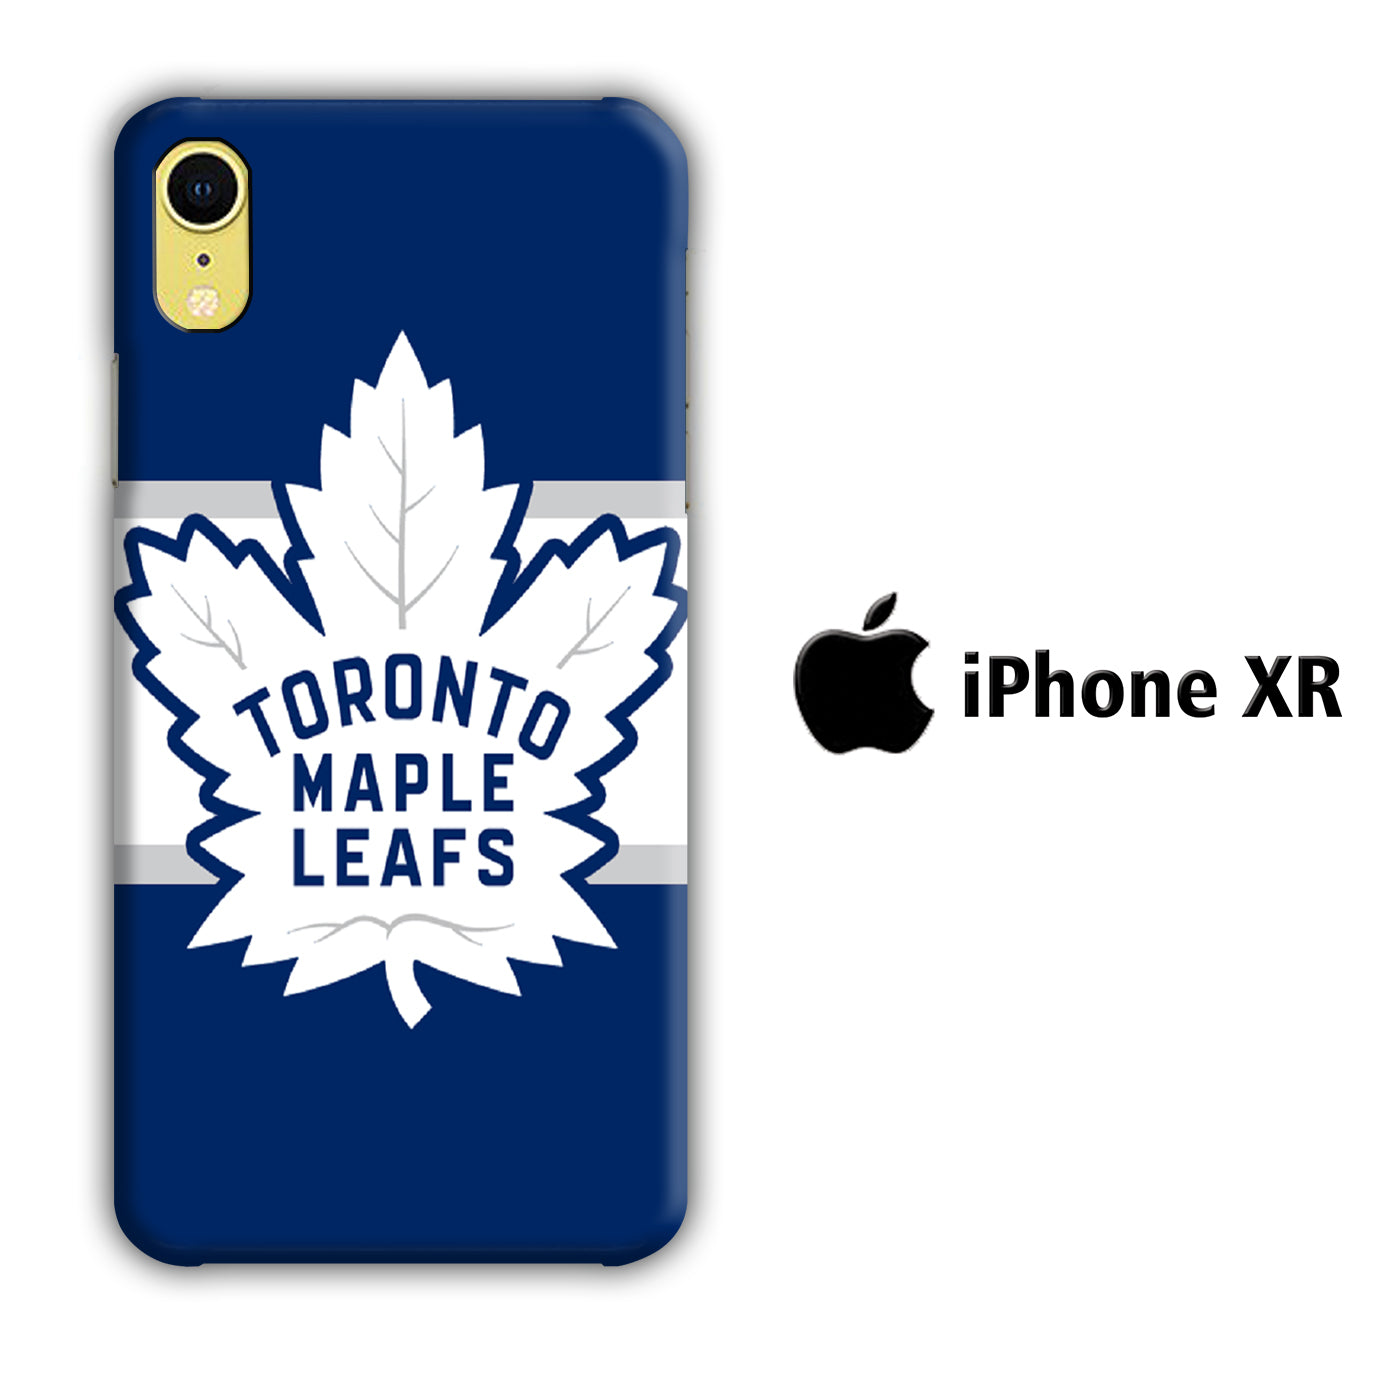 Hokkey Toronto Maple Leafs iPhone XR 3D Case